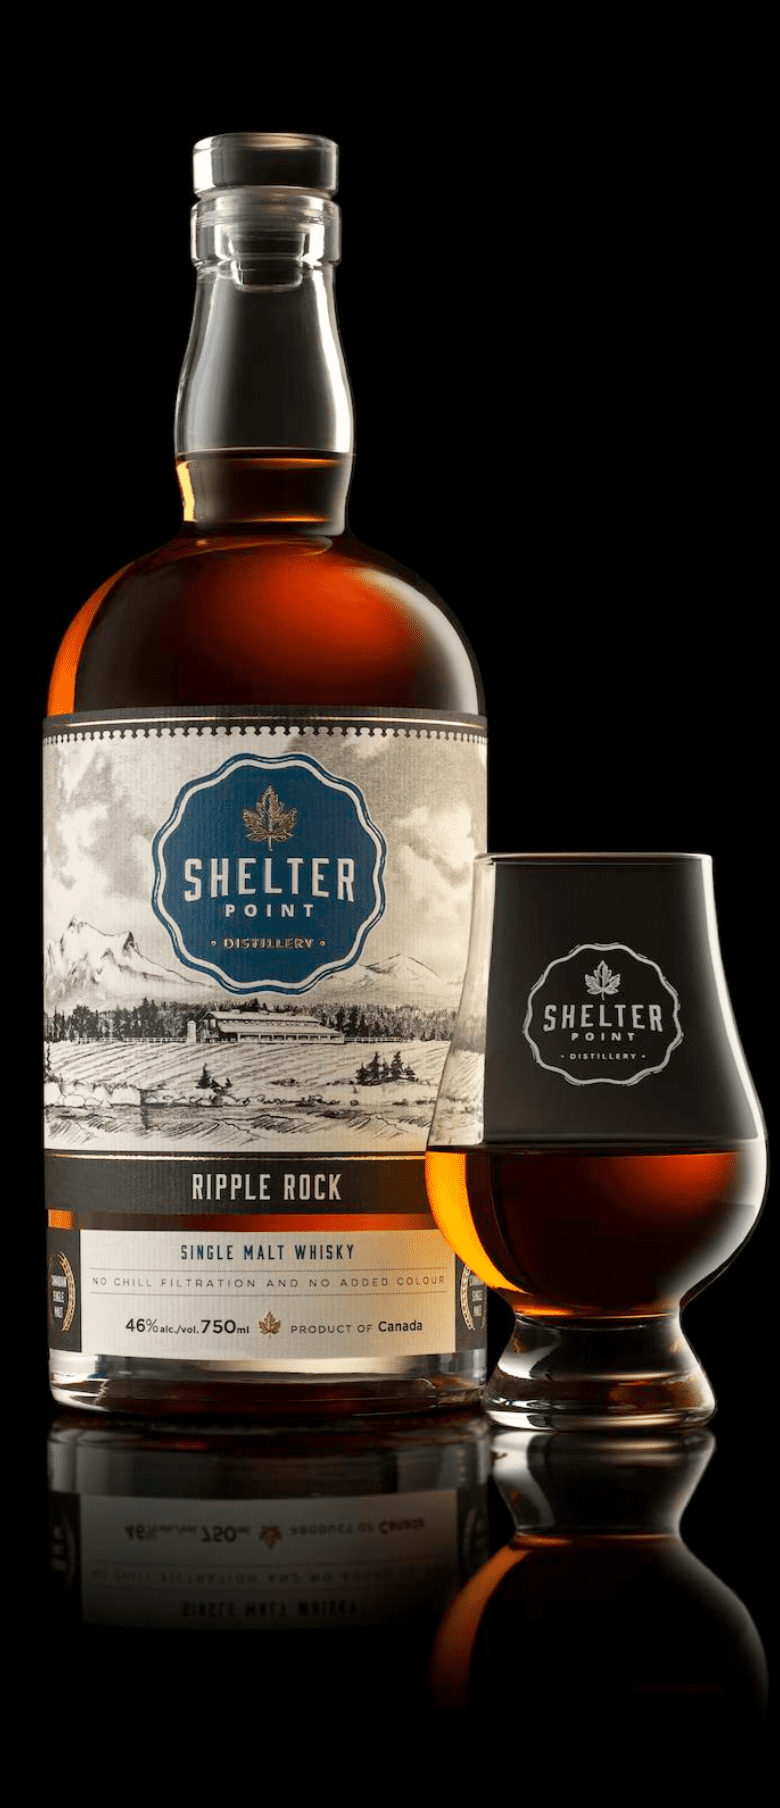 Shelter Point double distilled single malt scotch whisky